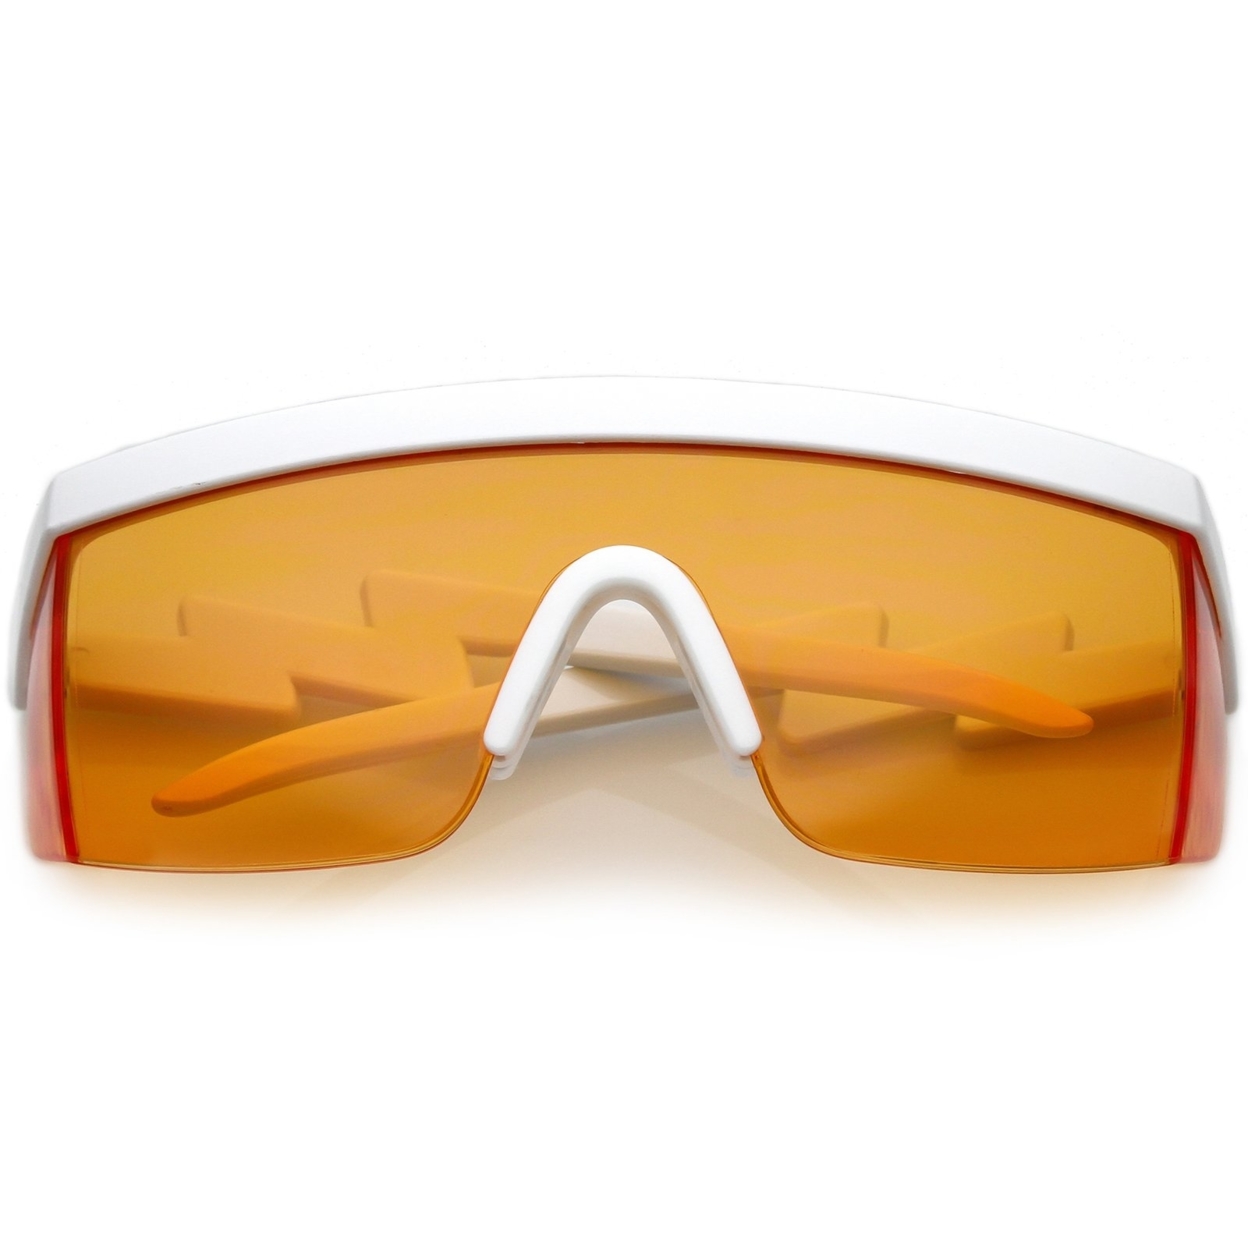 Oversize Semi Rimless Goggle Shield Sunglasses Color Lens 60mm - White / Red